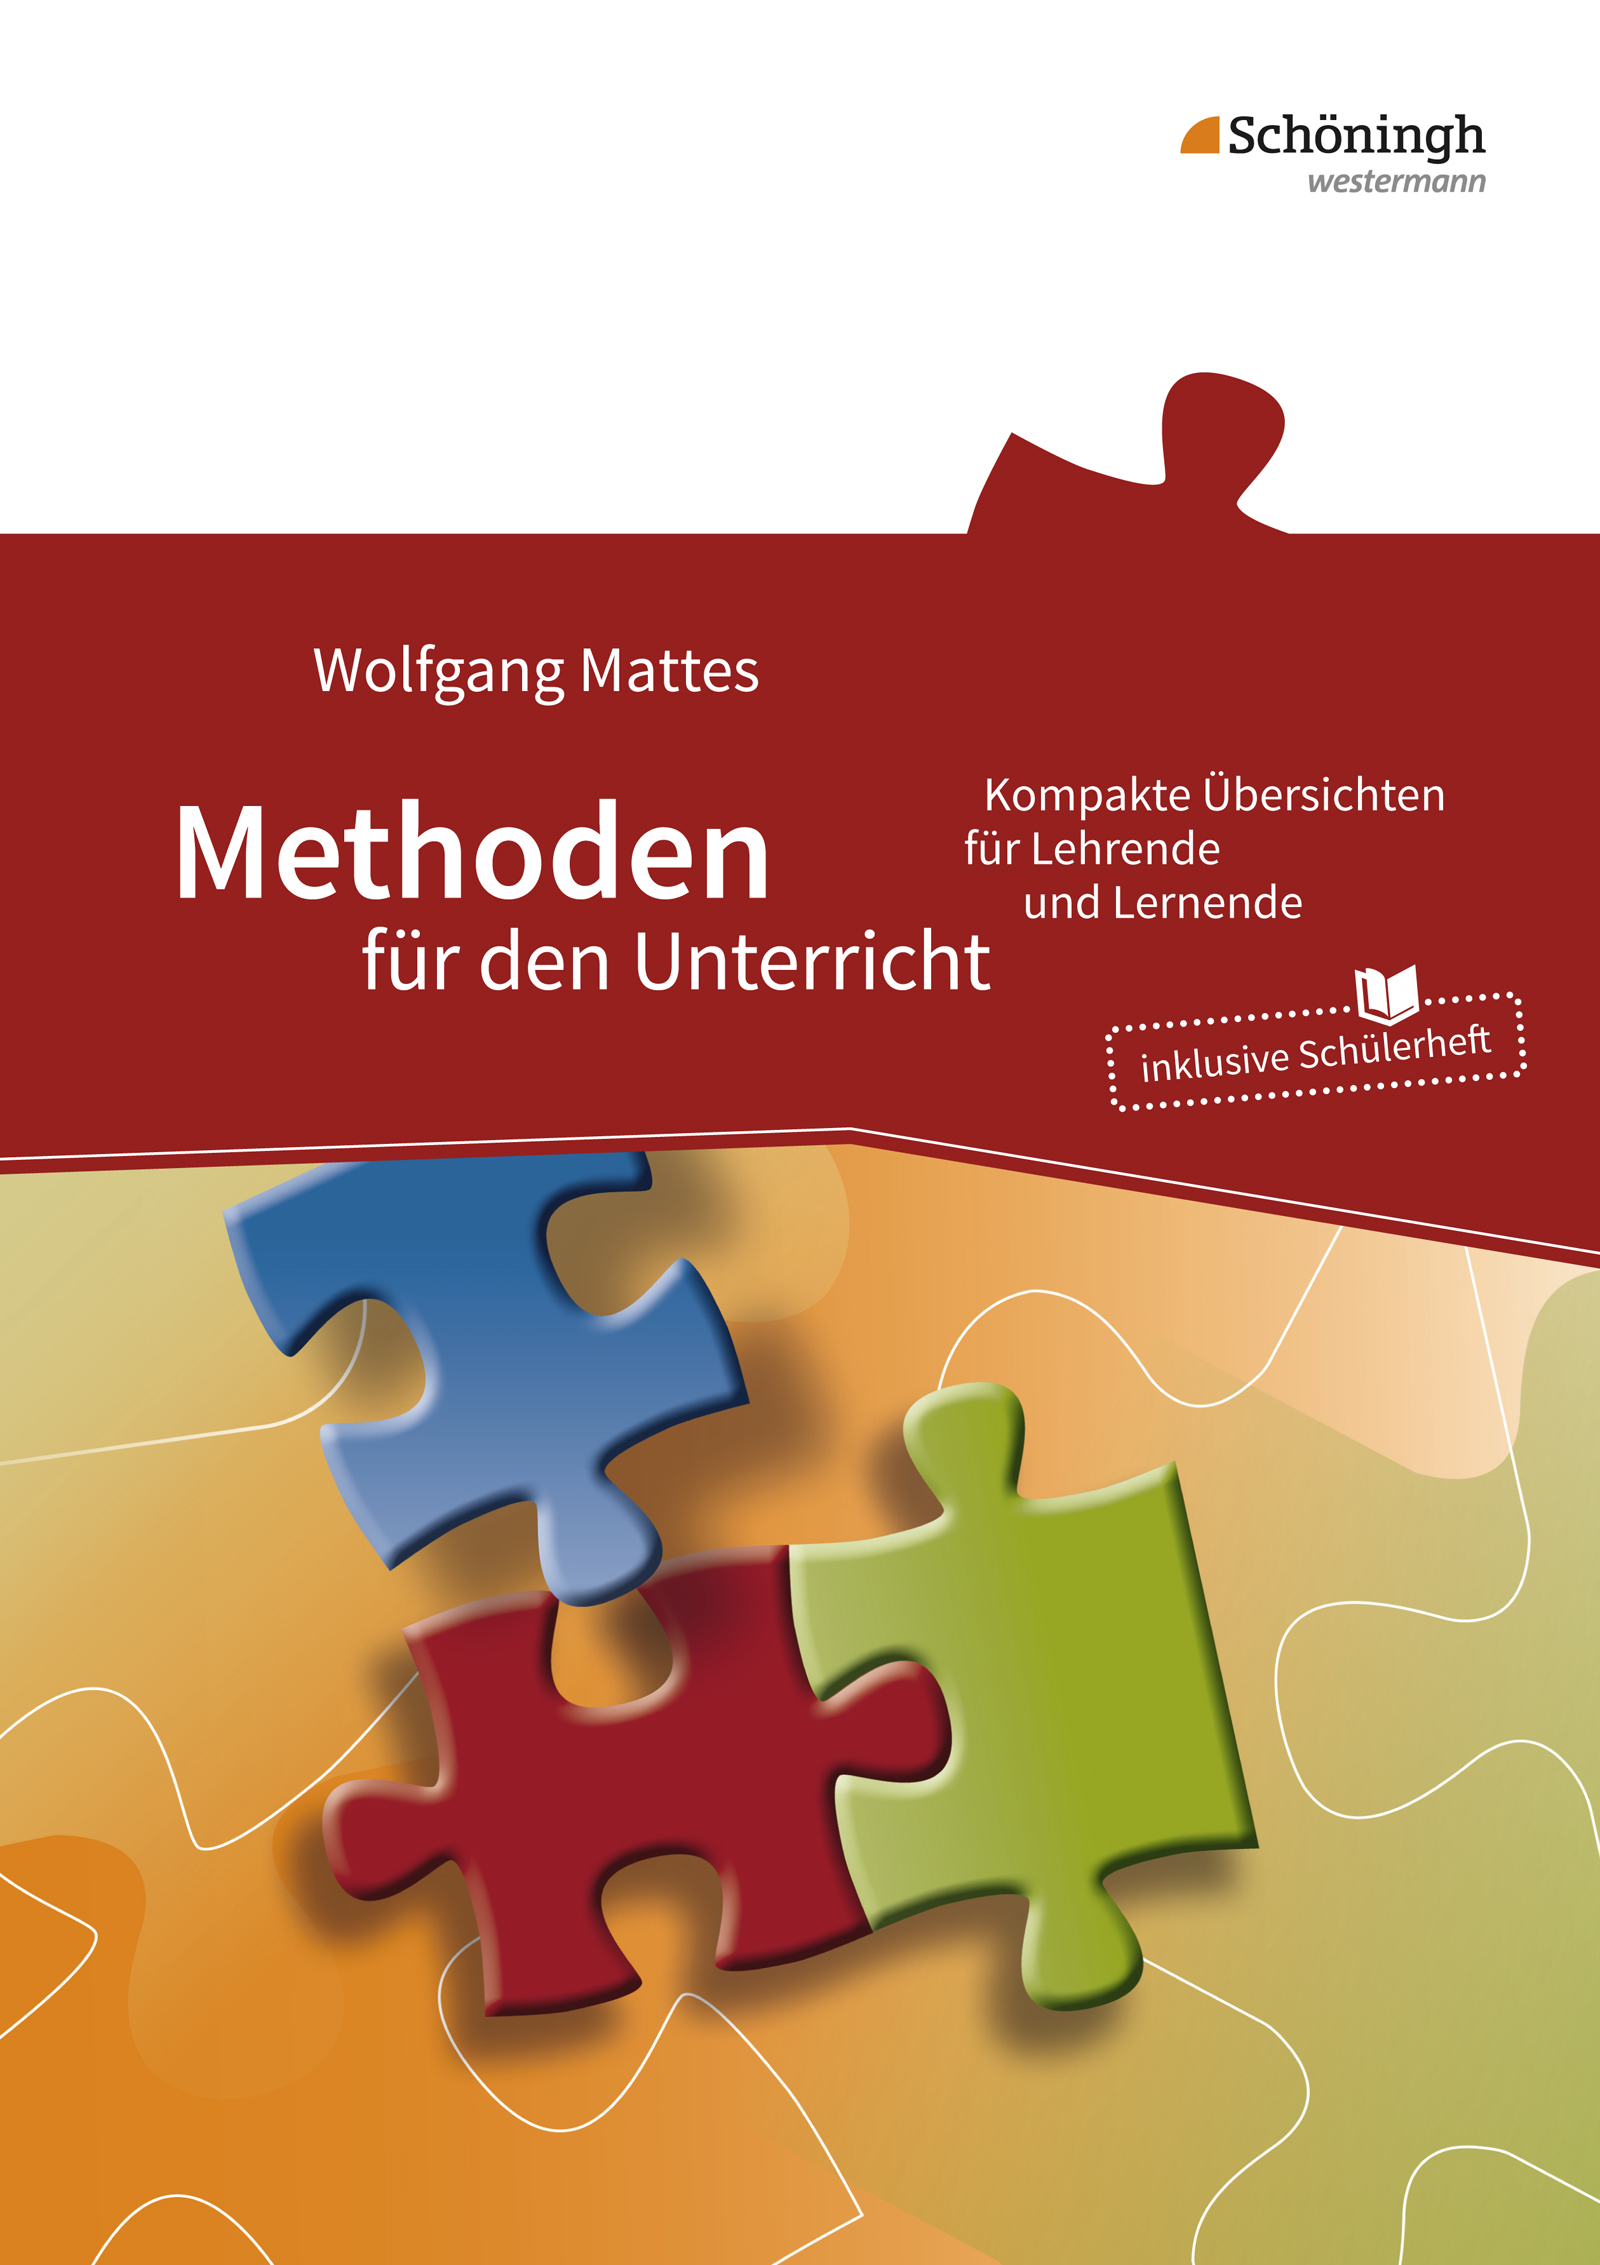 Wolfgang Mattes / Methoden für den Unterricht - Bild 1 von 1